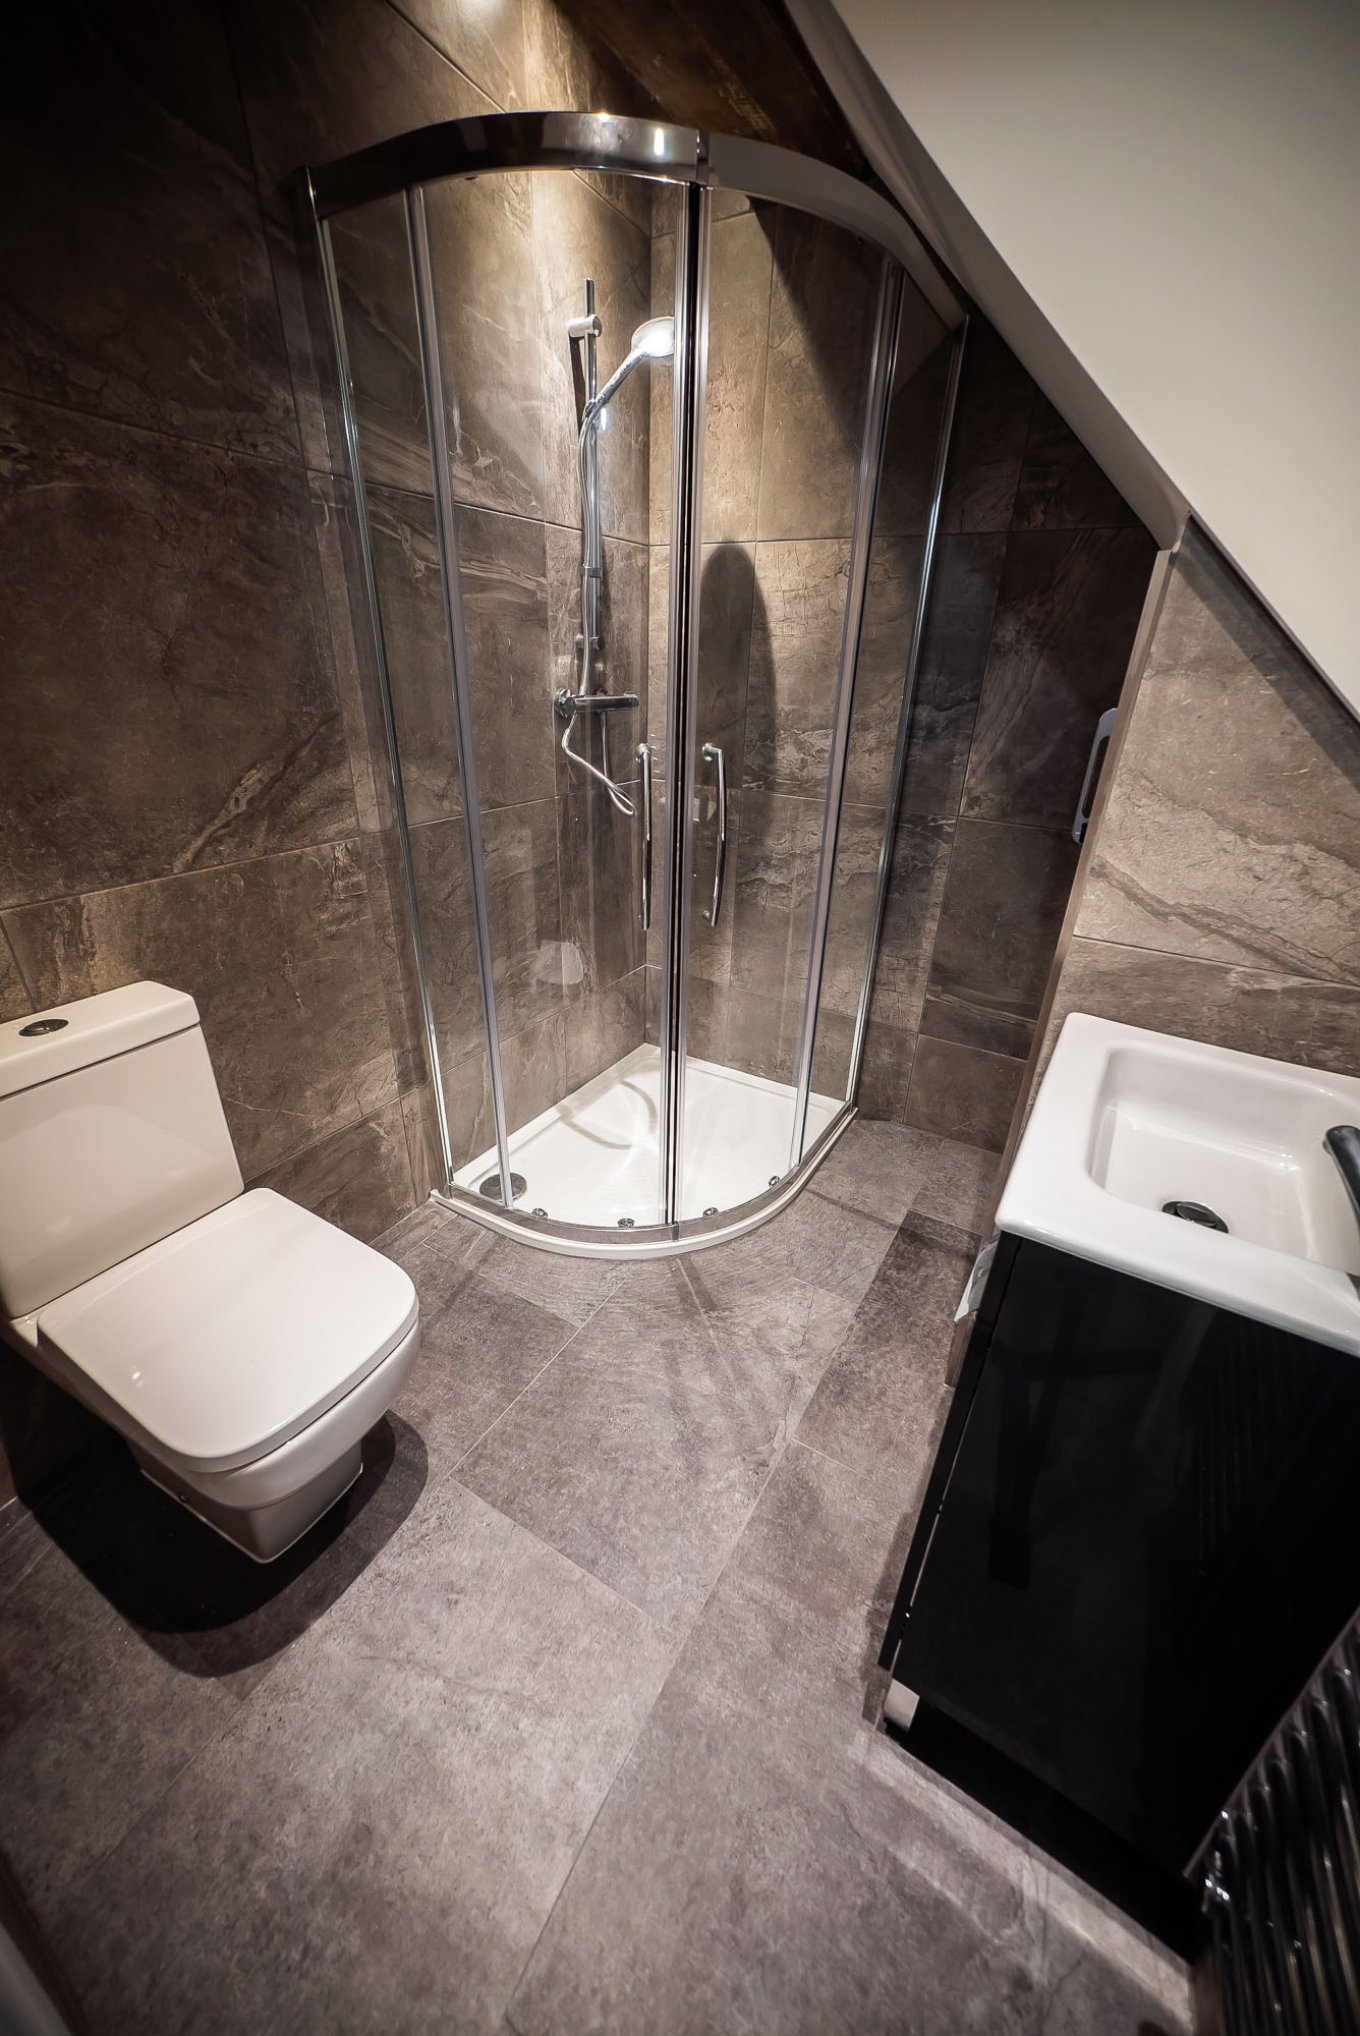 wineo Designboden Badezimmer moderne Einrichtung Toilette Dusche Waschbecken Fliesenoptik